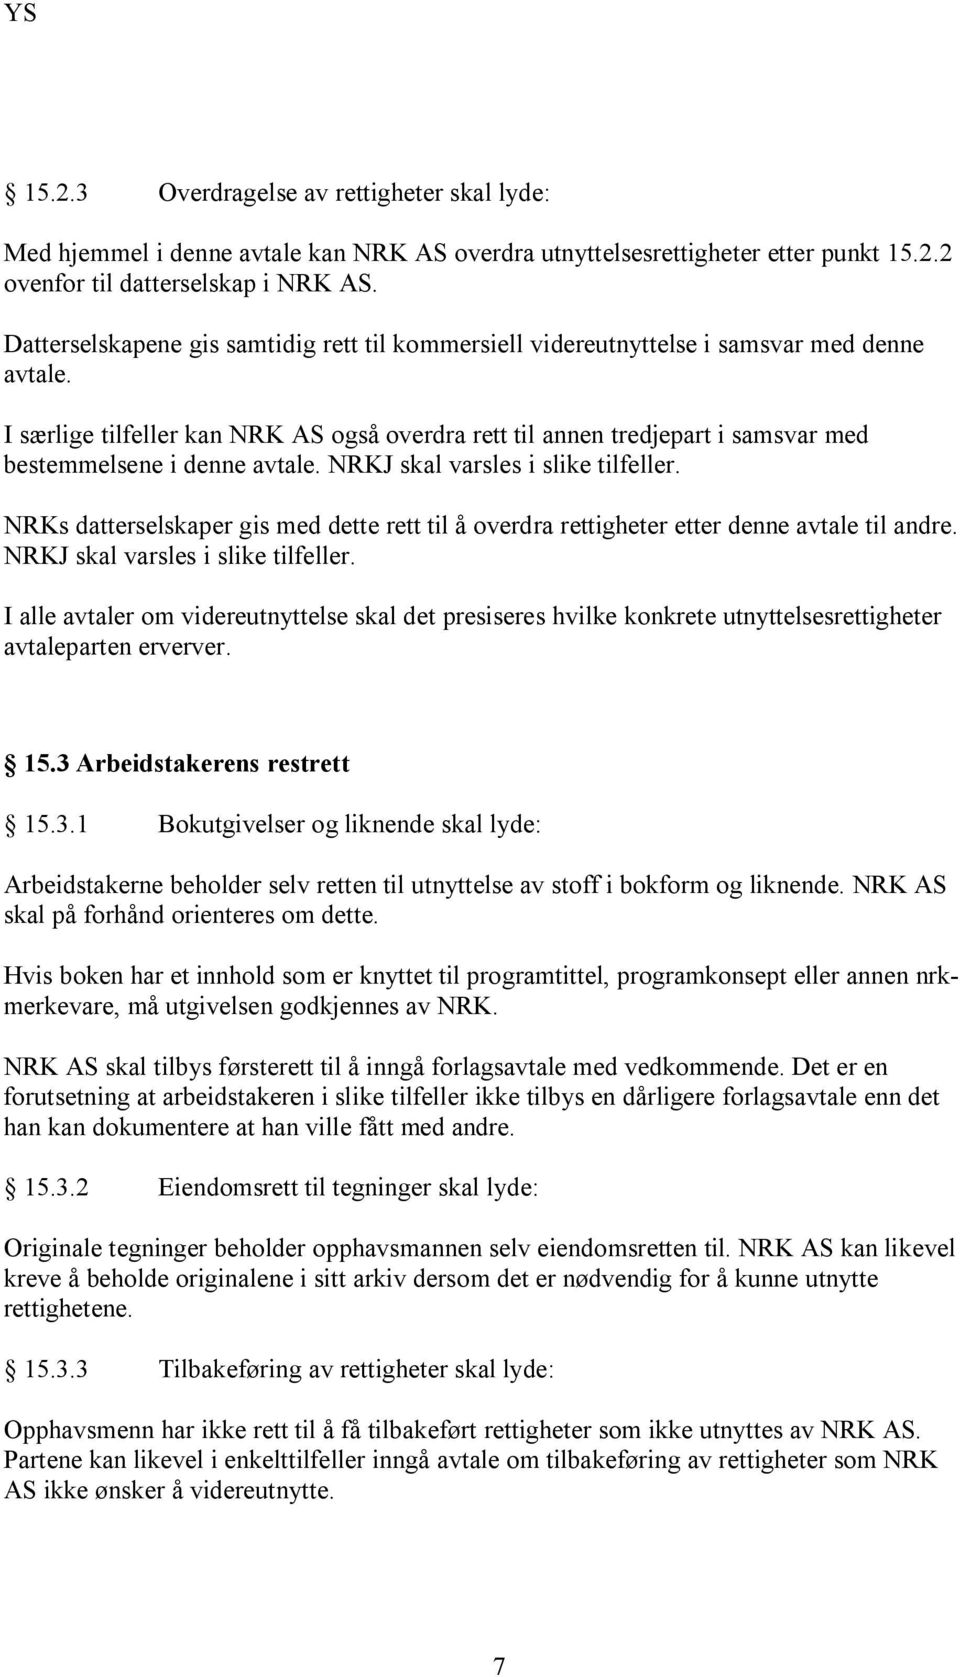 I særlige tilfeller kan NRK AS også overdra rett til annen tredjepart i samsvar med bestemmelsene i denne avtale. NRKJ skal varsles i slike tilfeller.